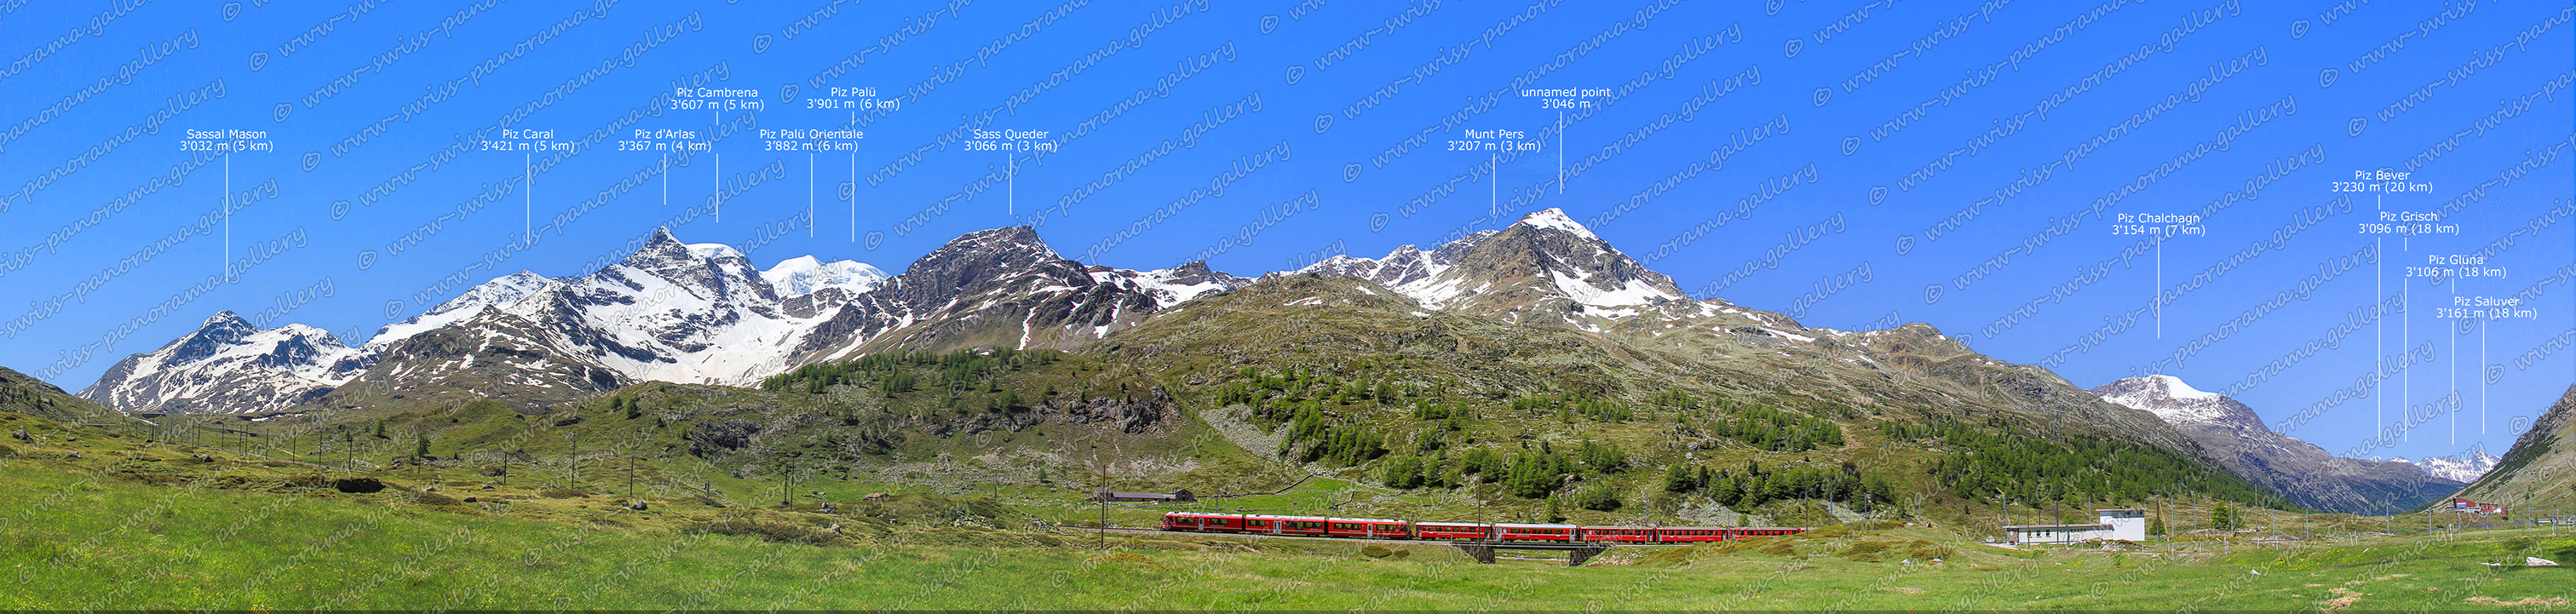 Bernina Pass Panorama, Piz Caral 3'421 (3 km), Piz Cambrena 3'607 m (4 km), Sass Queder 3'066 m (3 km), Munt Pers 3'207 m (4 km), Piz Arlas 3'367 m (3 km), Ospizio Bernina, Piz Arlas 3'367 m (3 km) Piz Grisch 3'096 m (18 km), Piz Glüna 3'106 m (18 km), Piz Saluver 3'161 m (18 km), Piz Bever 3'230 m (20 km), Piz Chalchagn 3'154 m (7 km), Sass Queder, Munt Pers 3'207 m (3 km), Piz Paslü 3'901 m (6 km), Piz Palü Orientale, Sassal Mason 3'032 m (5 km), Piz Caral 3'421 m (5 km), Piz d'Arlas 3'367 m (4 km), Piz Cambrena 